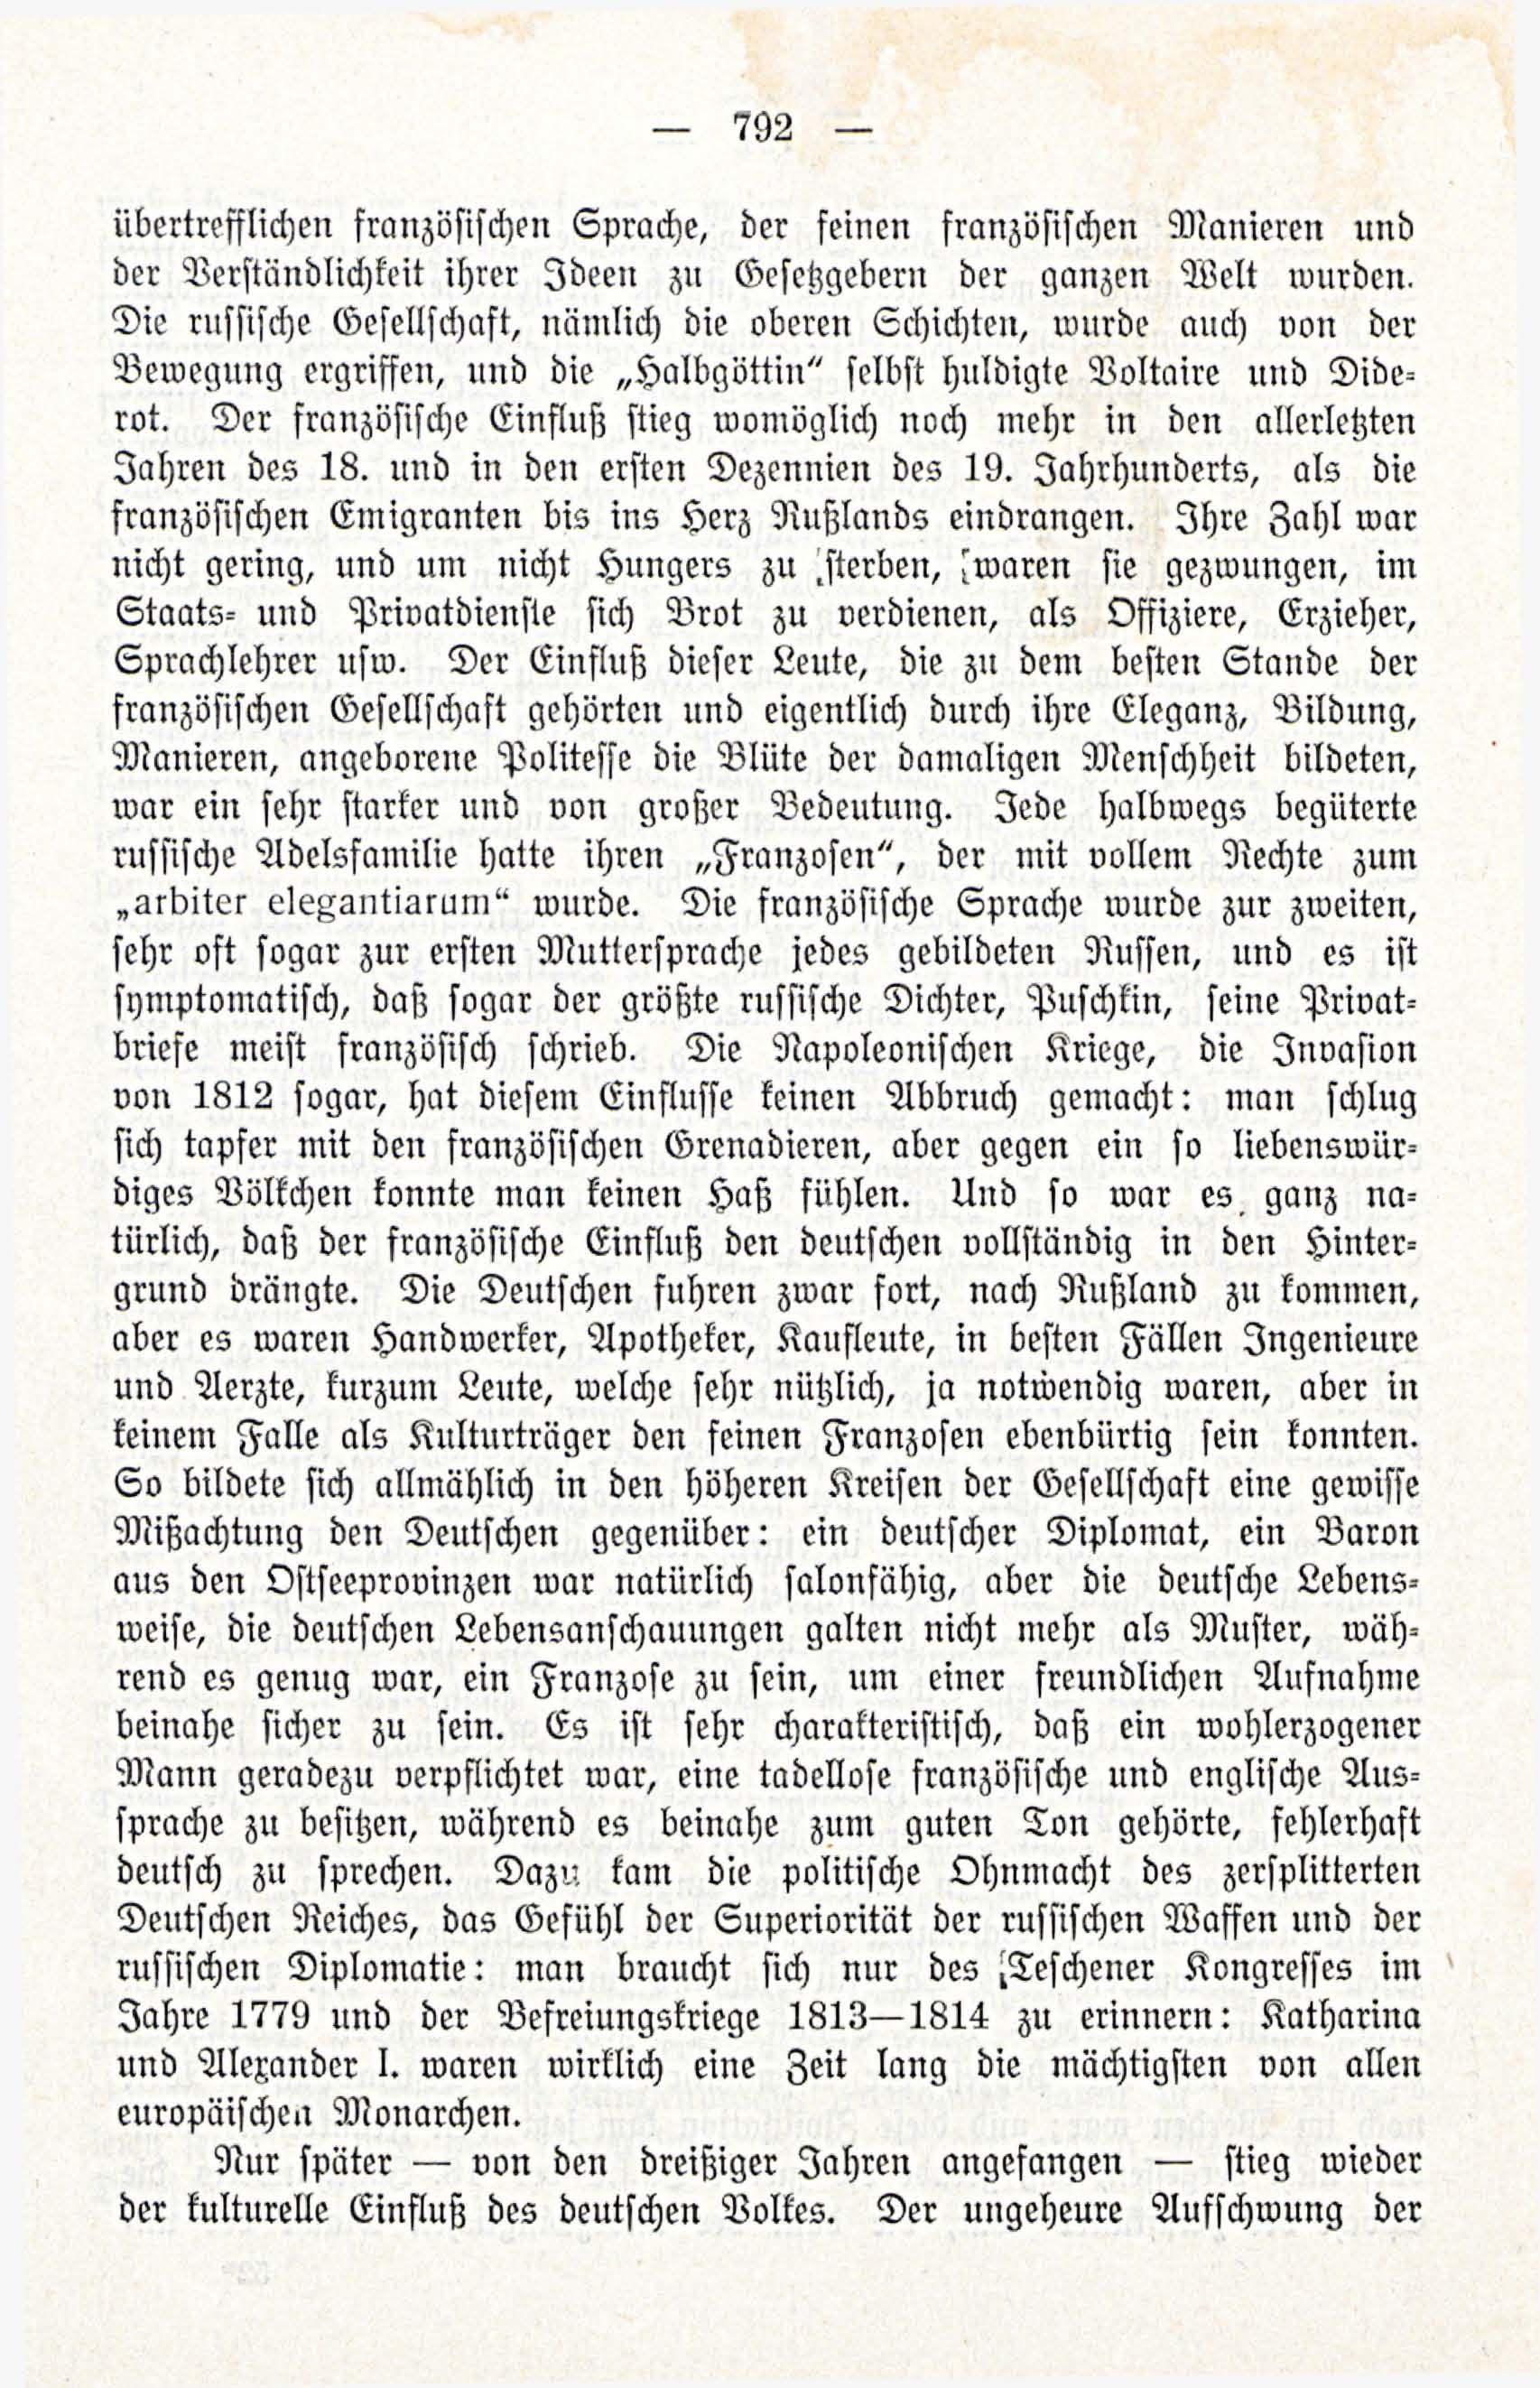 Deutsche Monatsschrift für Russland [3/12] (1914) | 8. (792) Main body of text